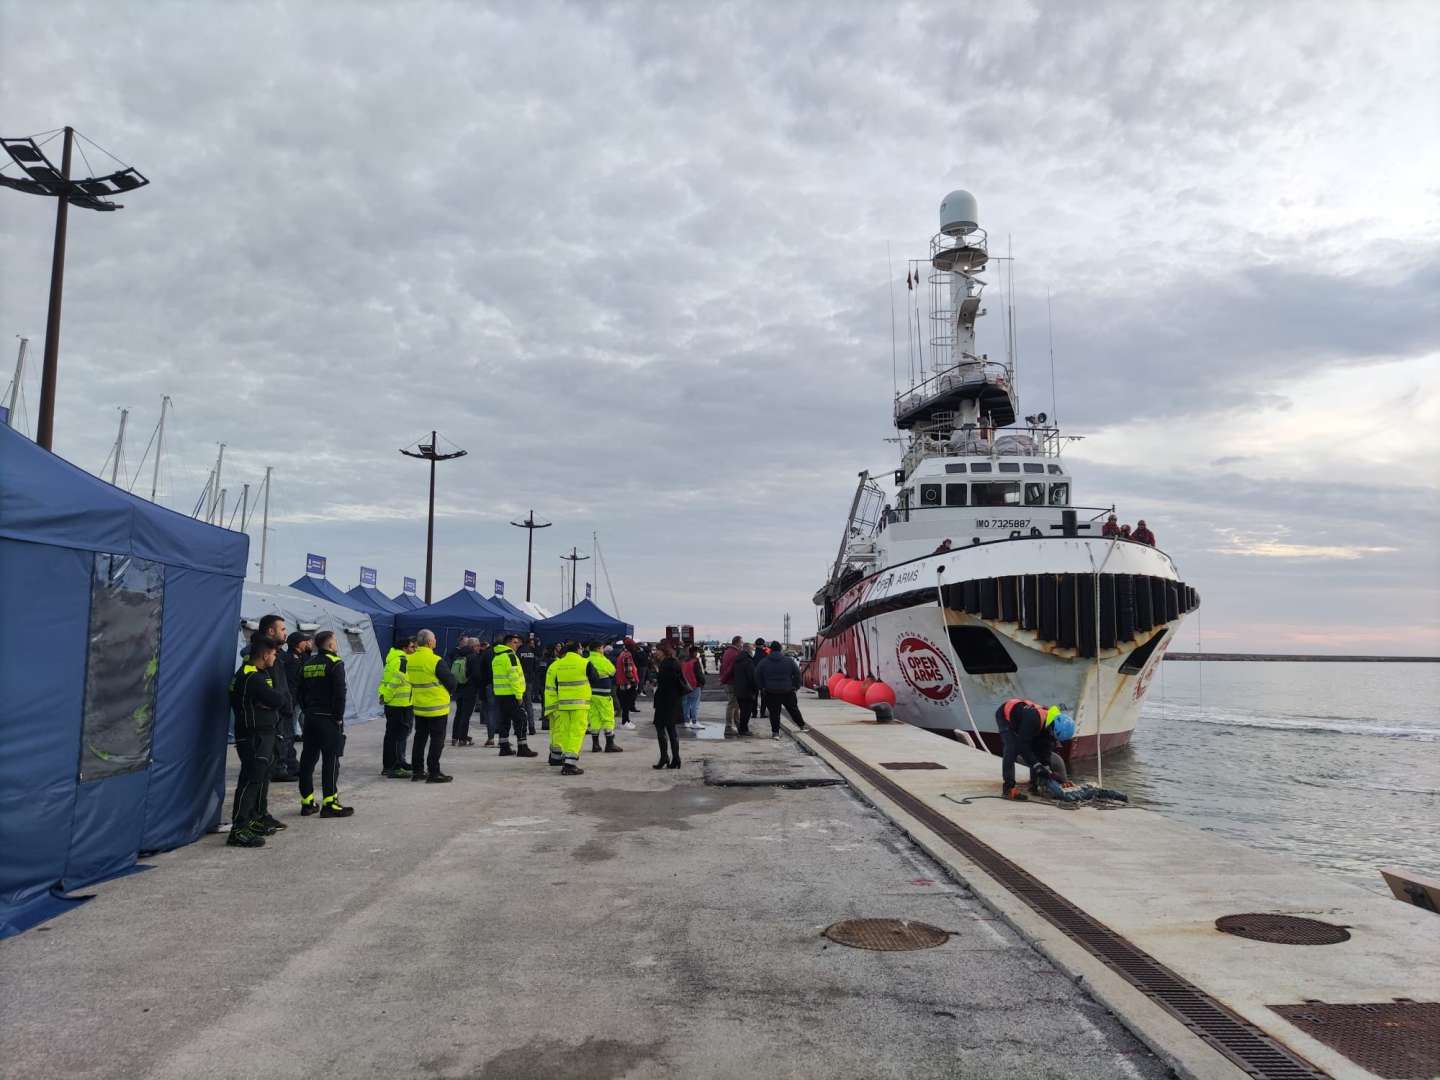 Sbarca oggi a Salerno nave con 84 migranti, il sindaco chiede ‘integrazione’